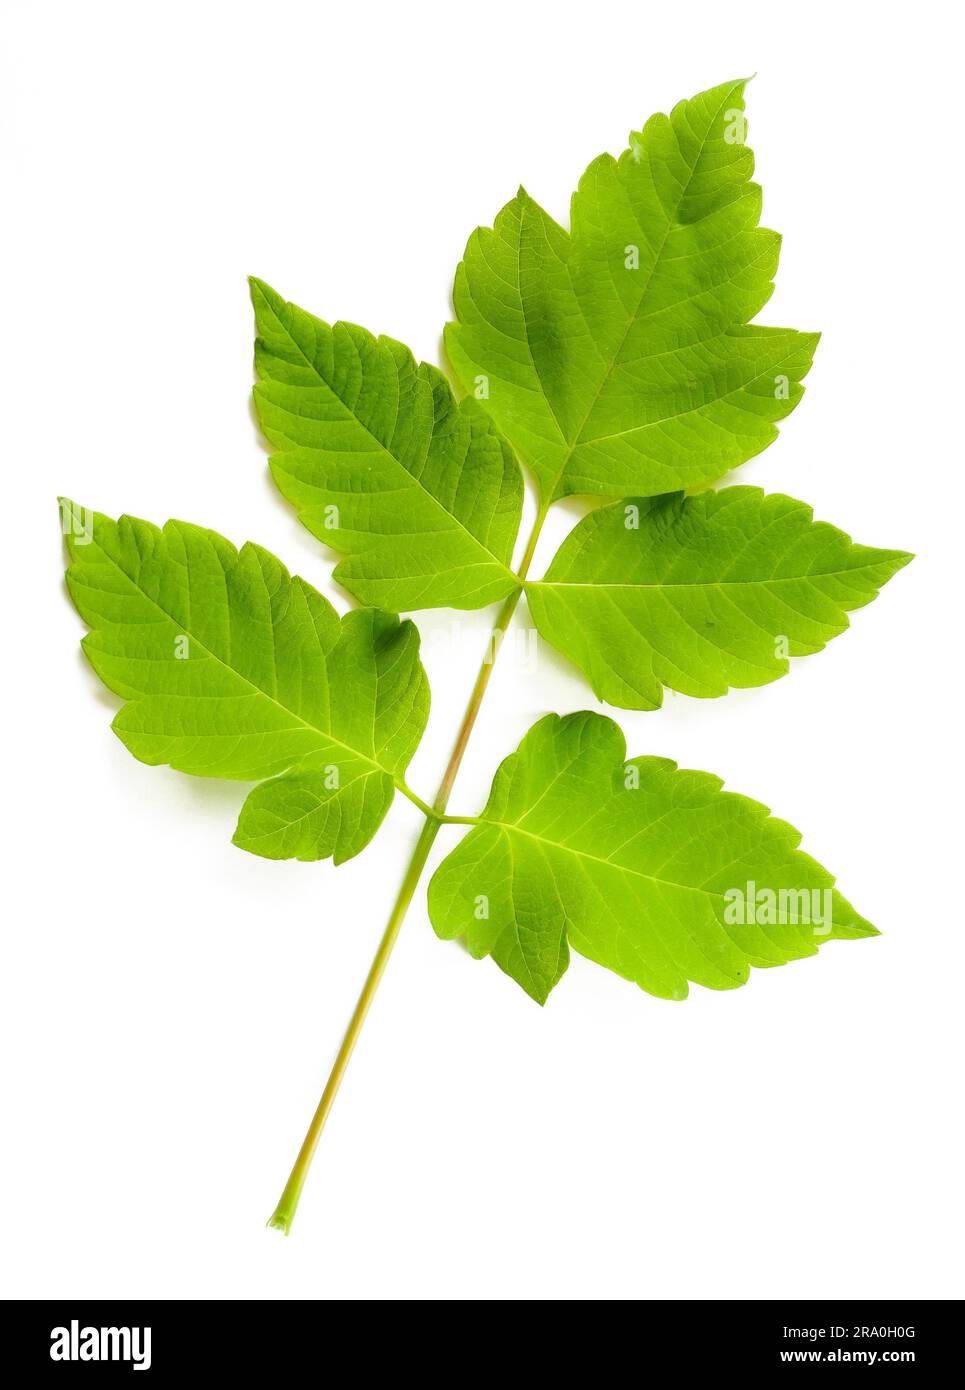 Le est un cultivar d'érable vert (Acer Negundo). Ici les feuilles sur fond blanc Banque D'Images